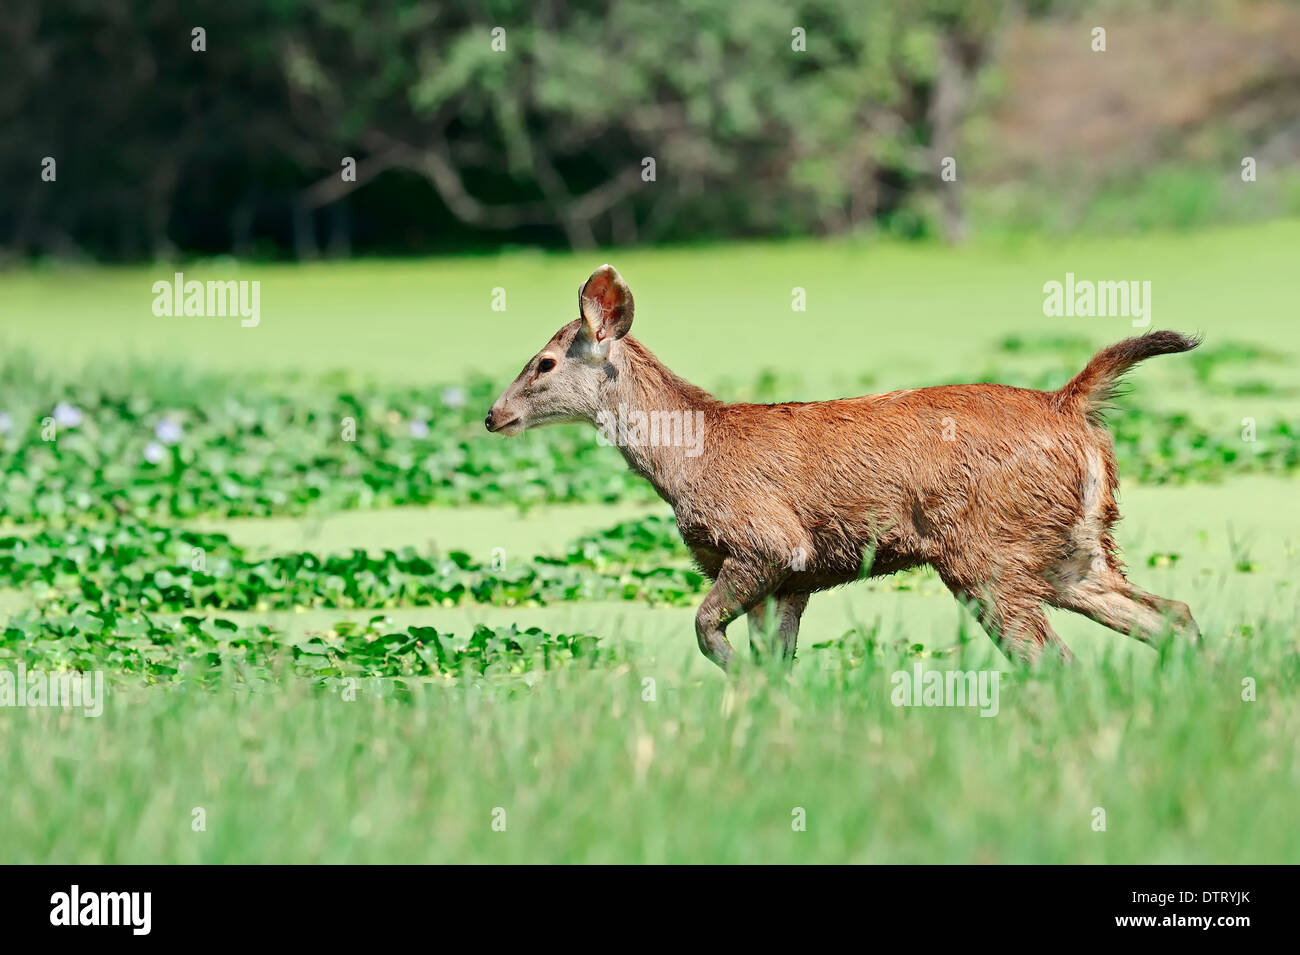 Sambar deer young hi-res stock photography and images - Alamy